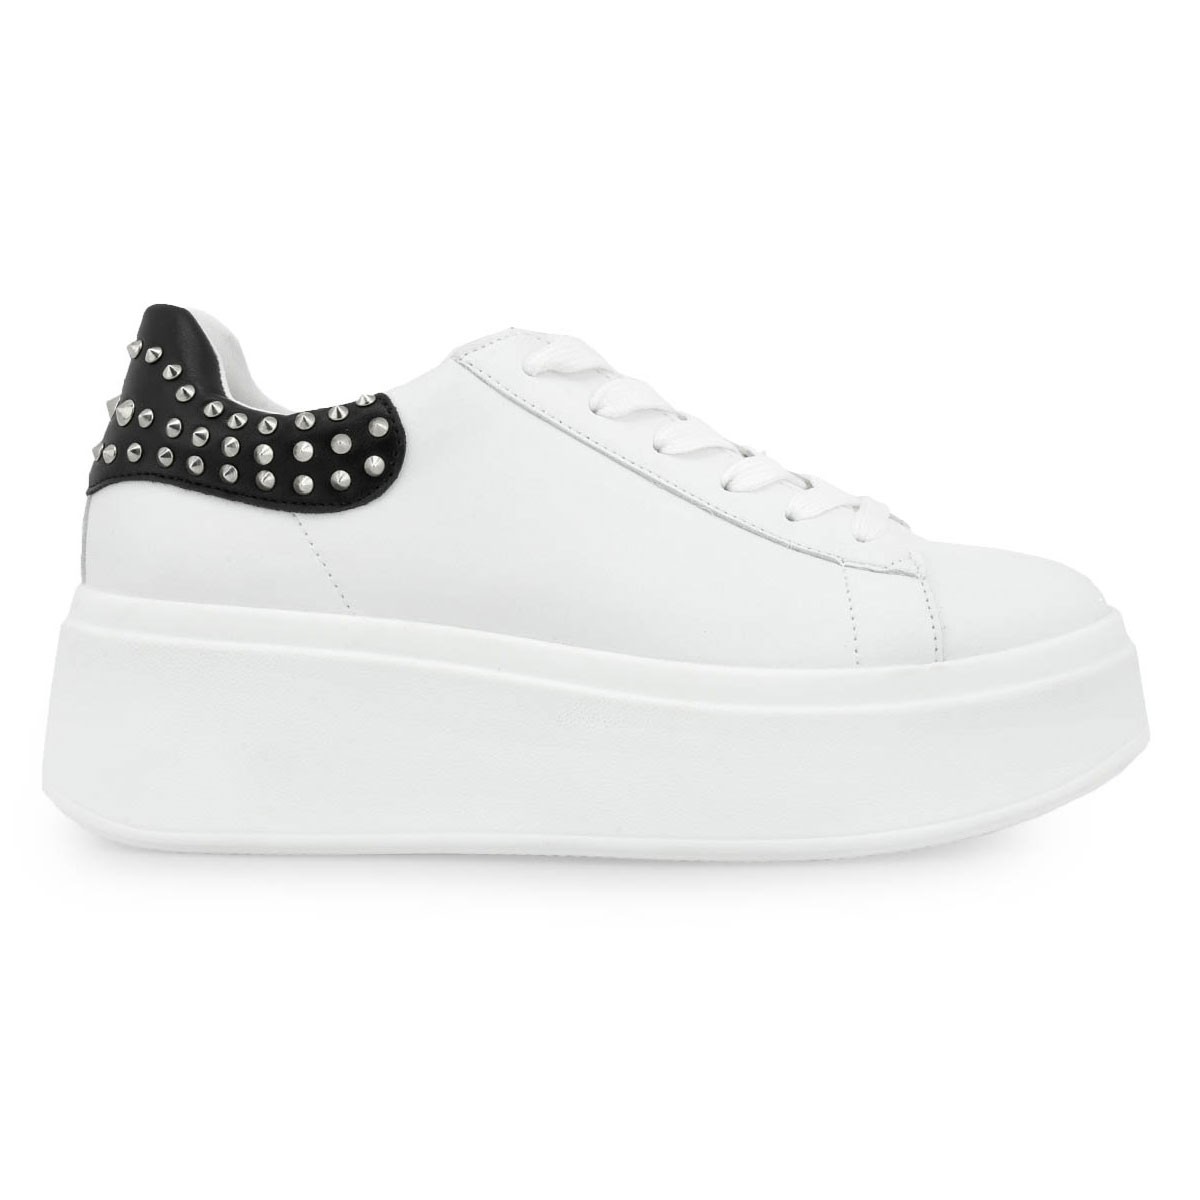 Renato Garini Γυναικεία Παπούτσια Sneakers 121-19R Λευκό Μαύρο Ασημί O119R1213X25